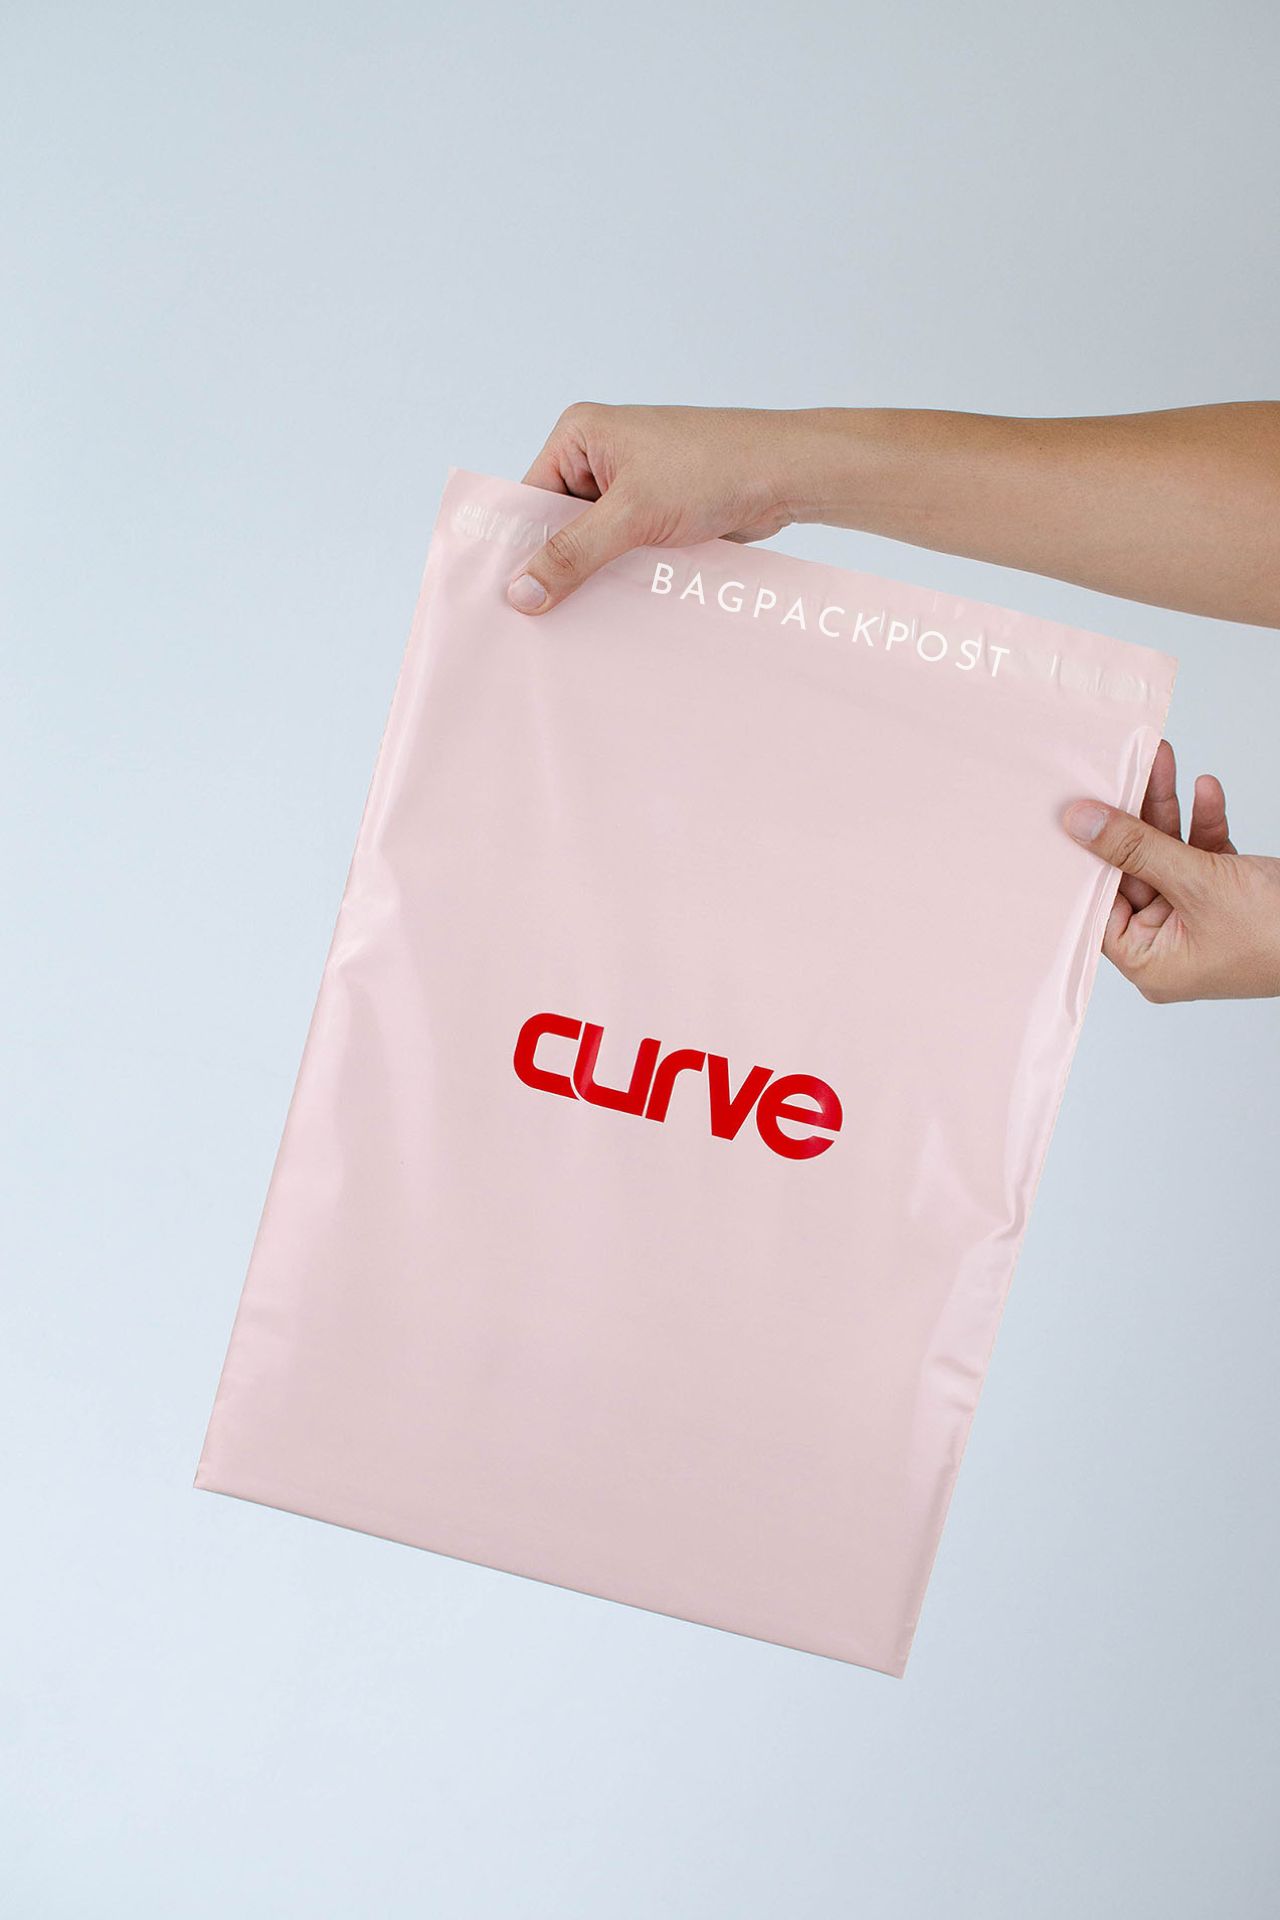 ผลิตถุงไปรษณีย์ ซองไปรษณีย์พิมพ์ลาย แบรนด์ CURVE ซองไปรษณีย์สีชมพู ถุงไปรษณีย์พิมพ์ลาย 4 BagPackPost